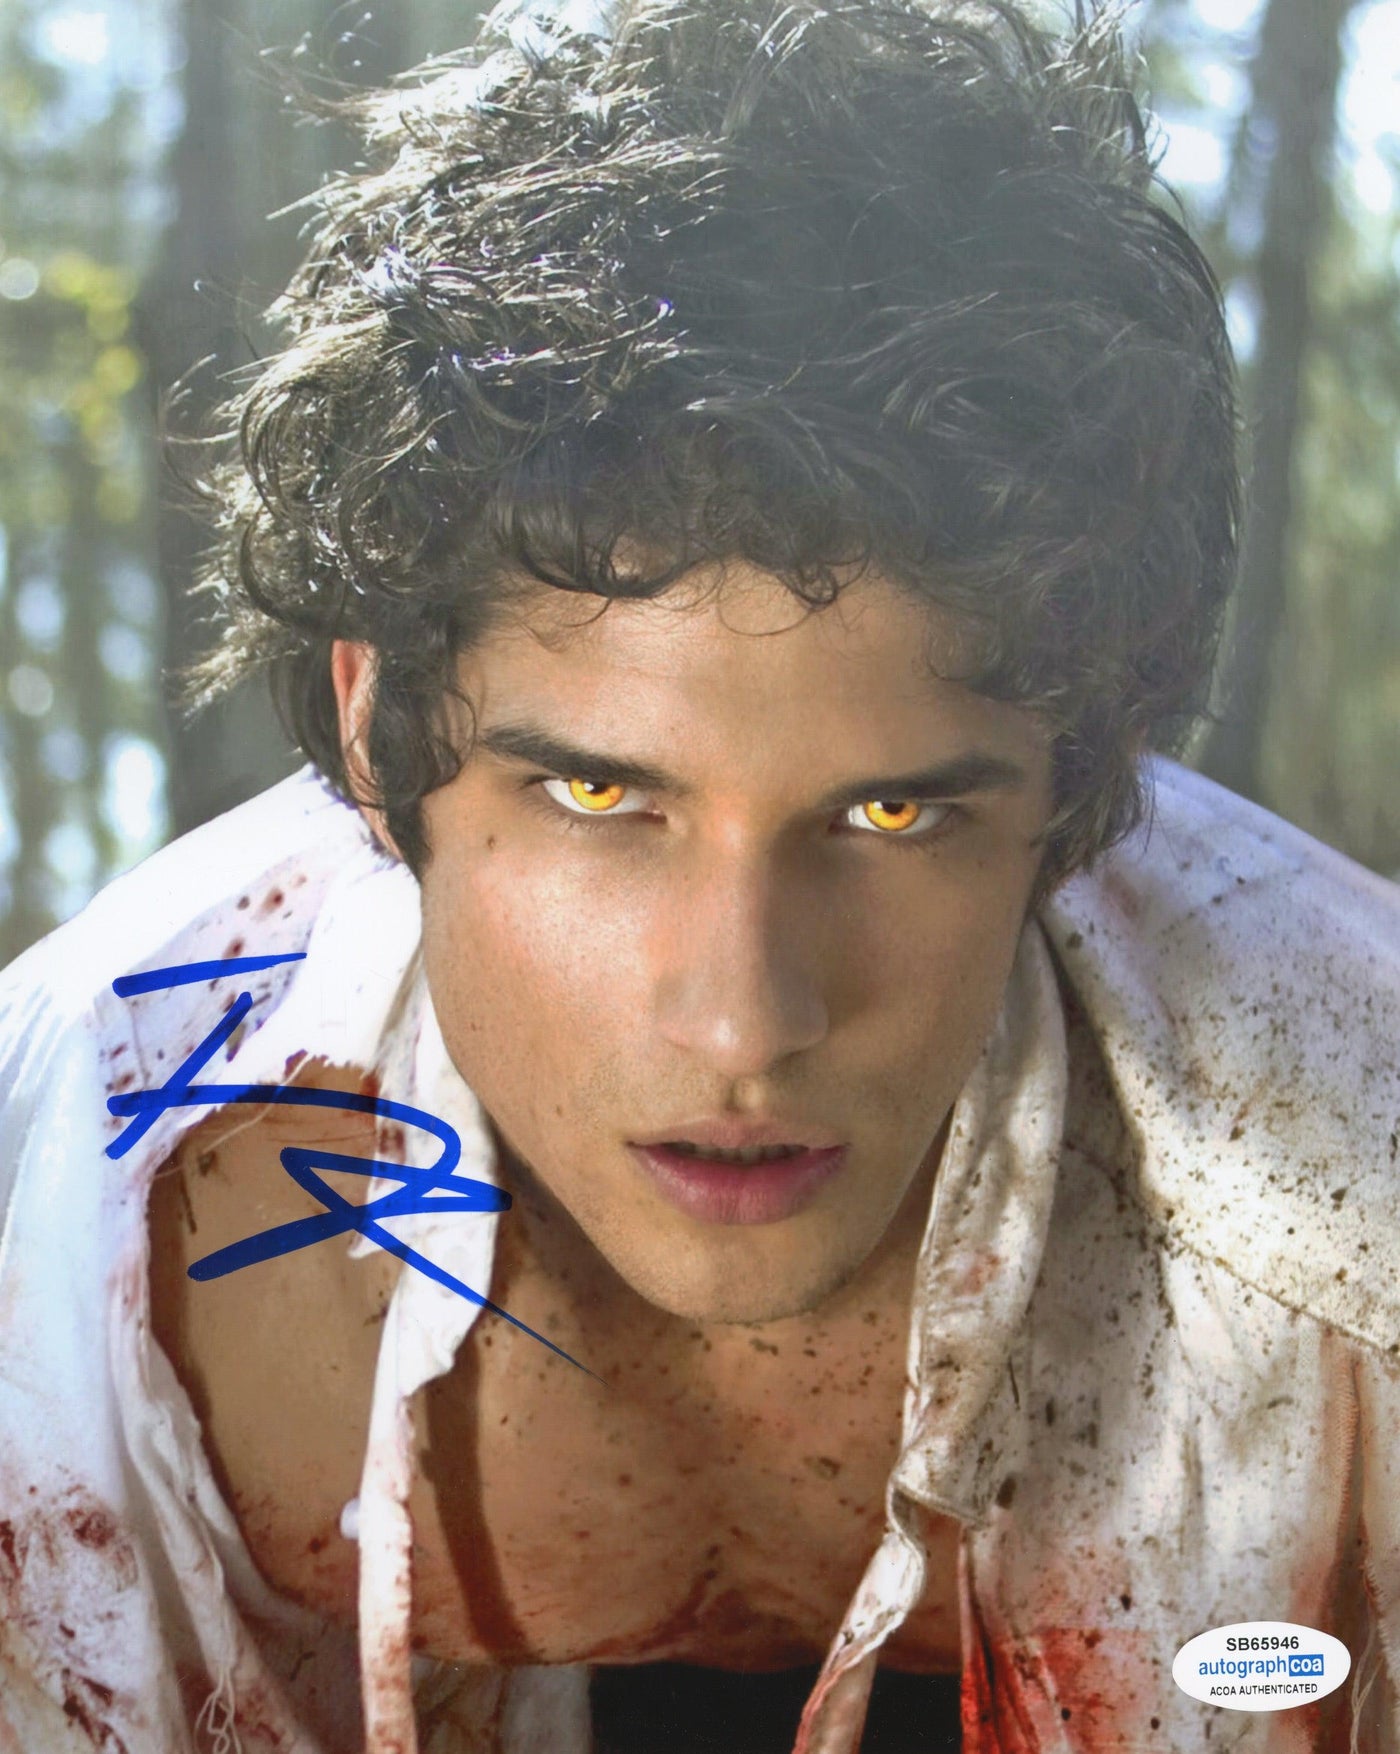 Tyler Posey Signed 8x10 Photo Teen Wolf Autographed ACOA #3